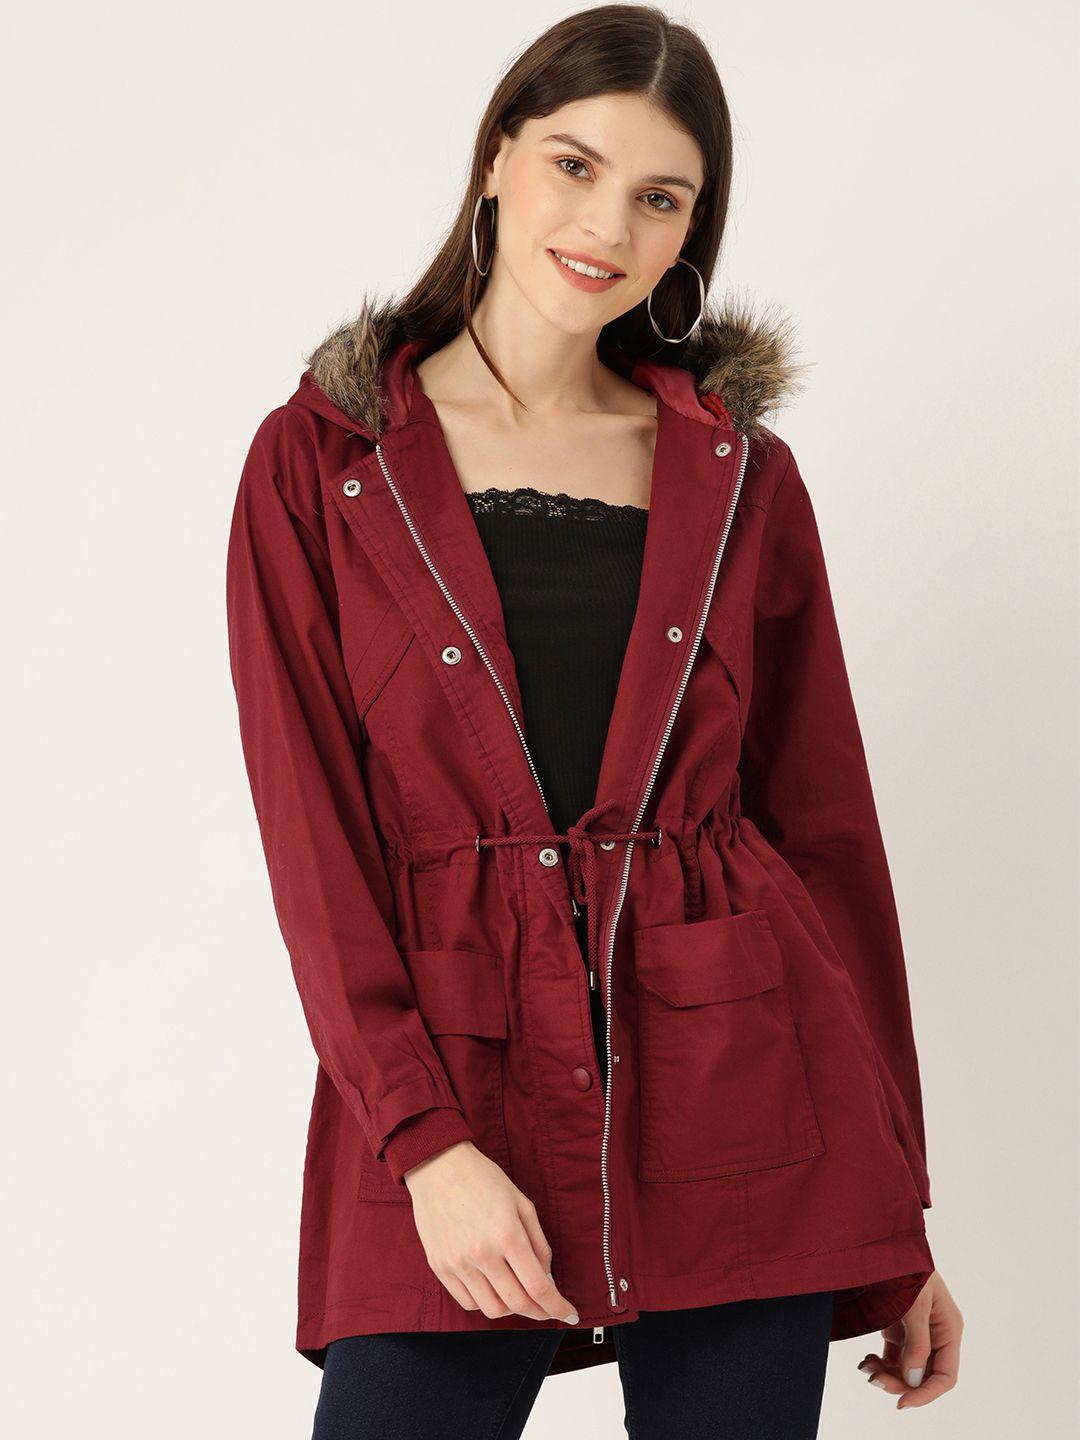 dressberry-women-maroon-solid-hooded-parka-jacket